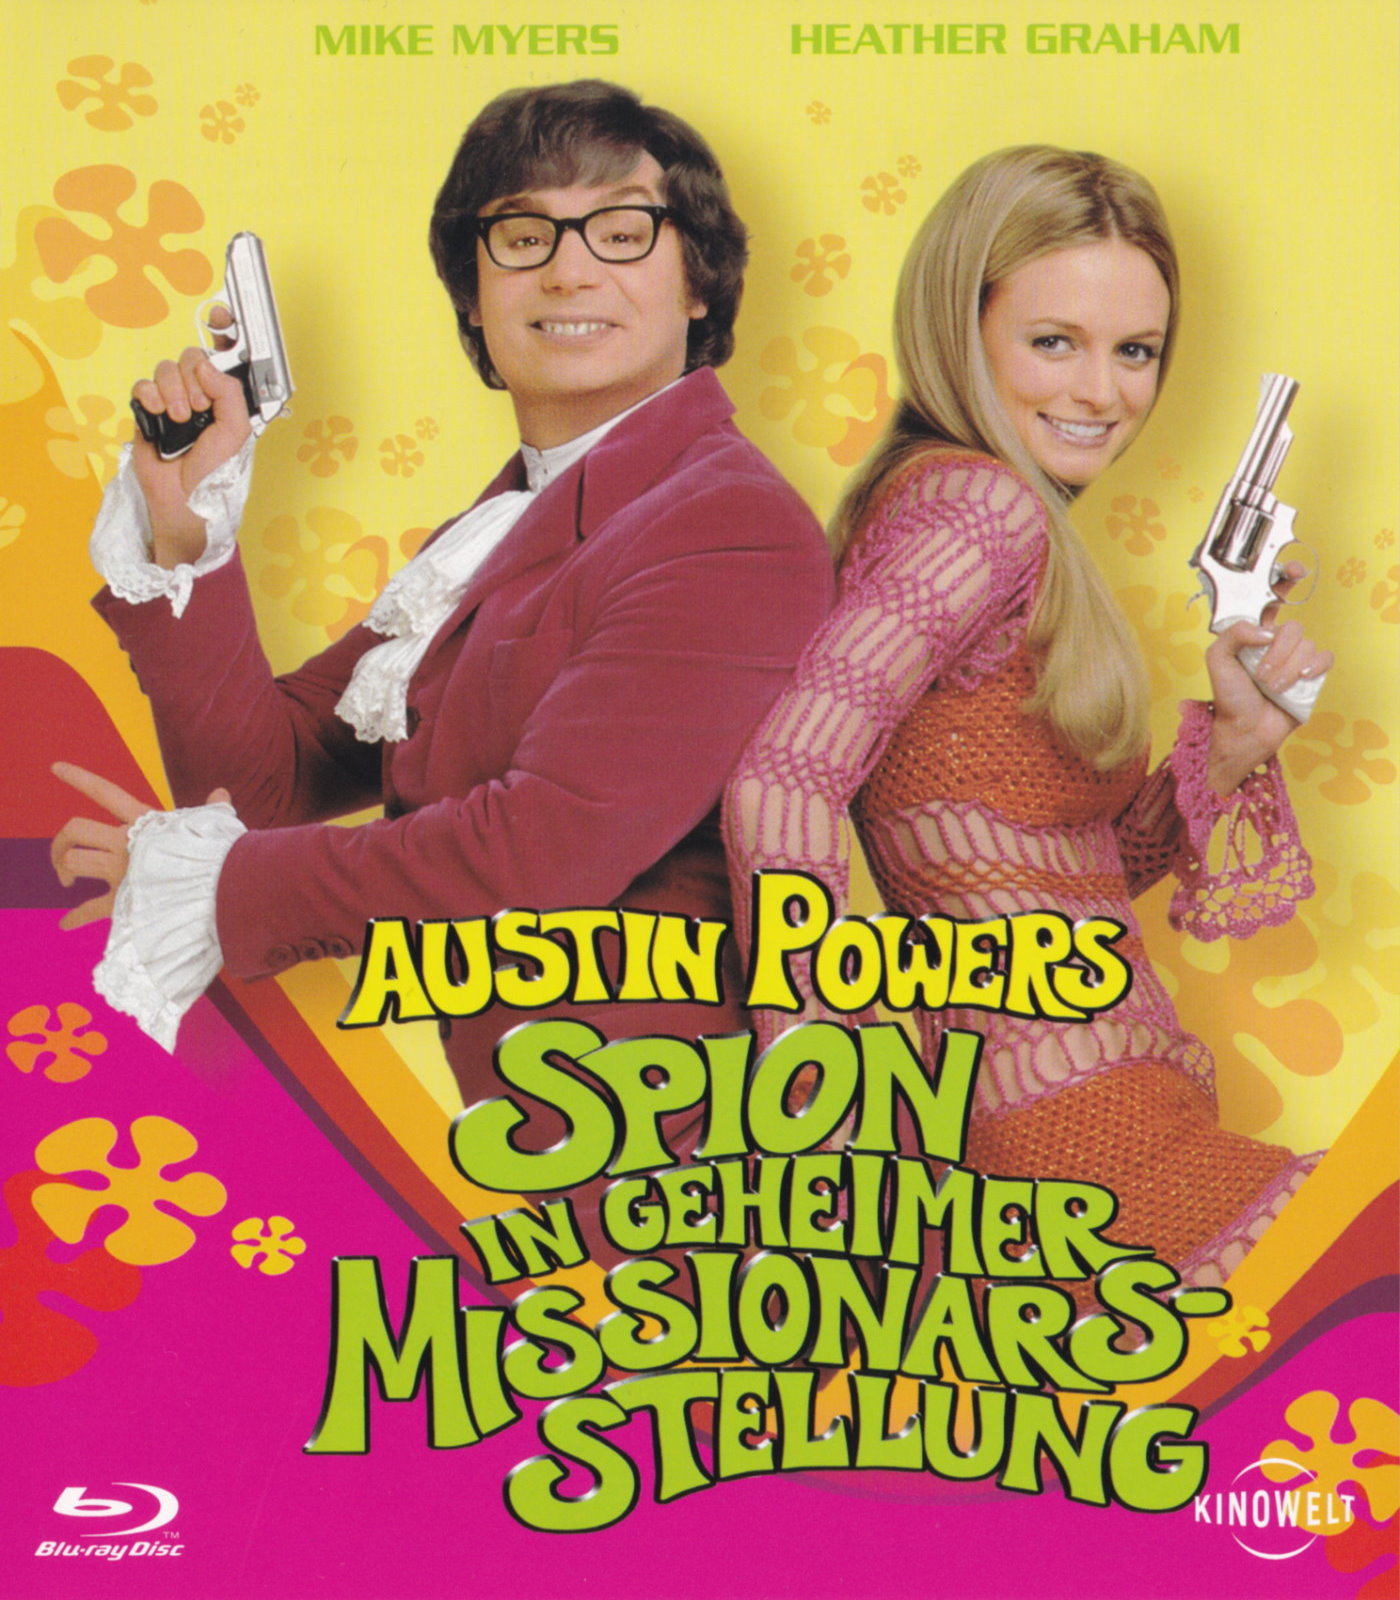 Cover - Austin Powers - Spion in geheimer Missionarsstellung.jpg